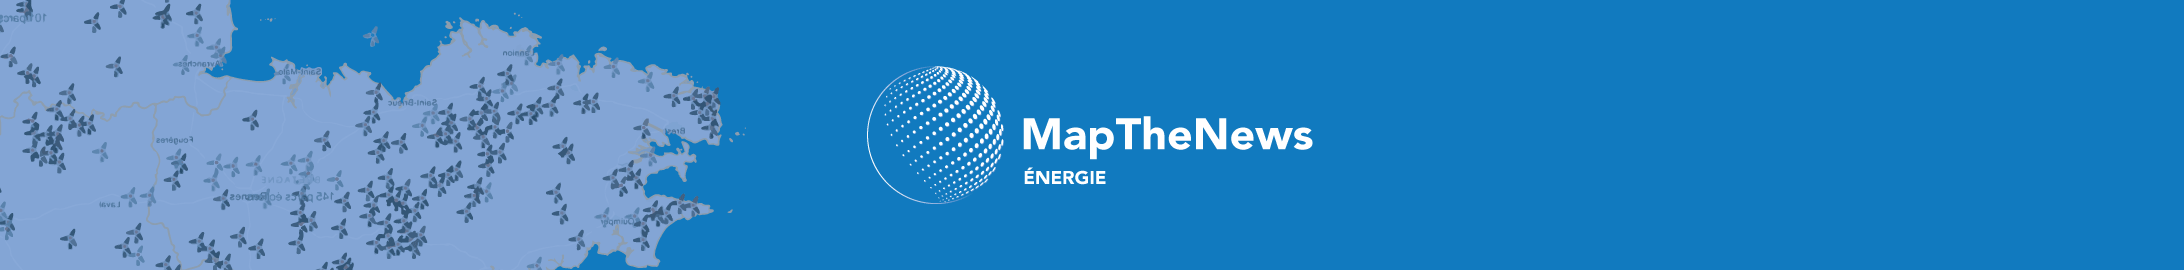 MapTheNews Energie